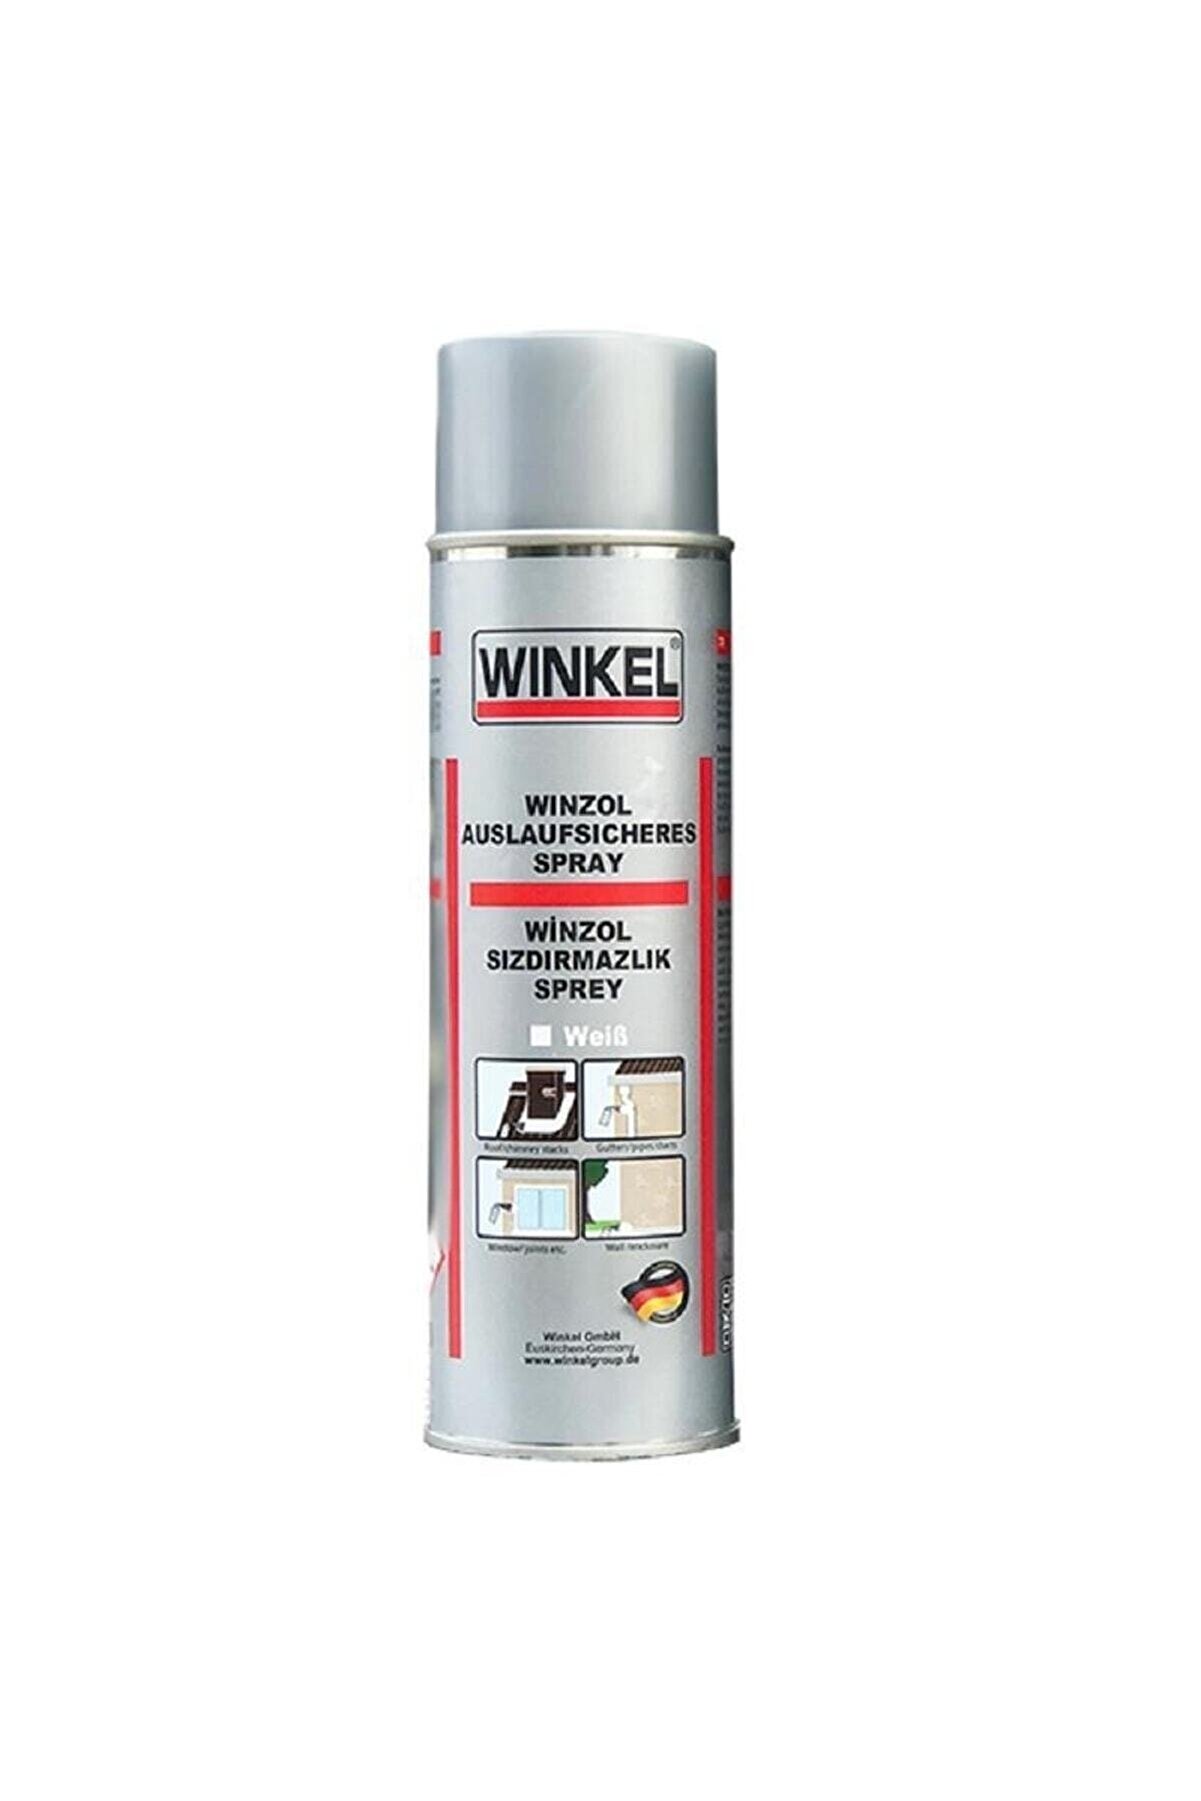 Winkel Beyaz Winzol Sızdırmazlık Kaplama Sprey 500ml.